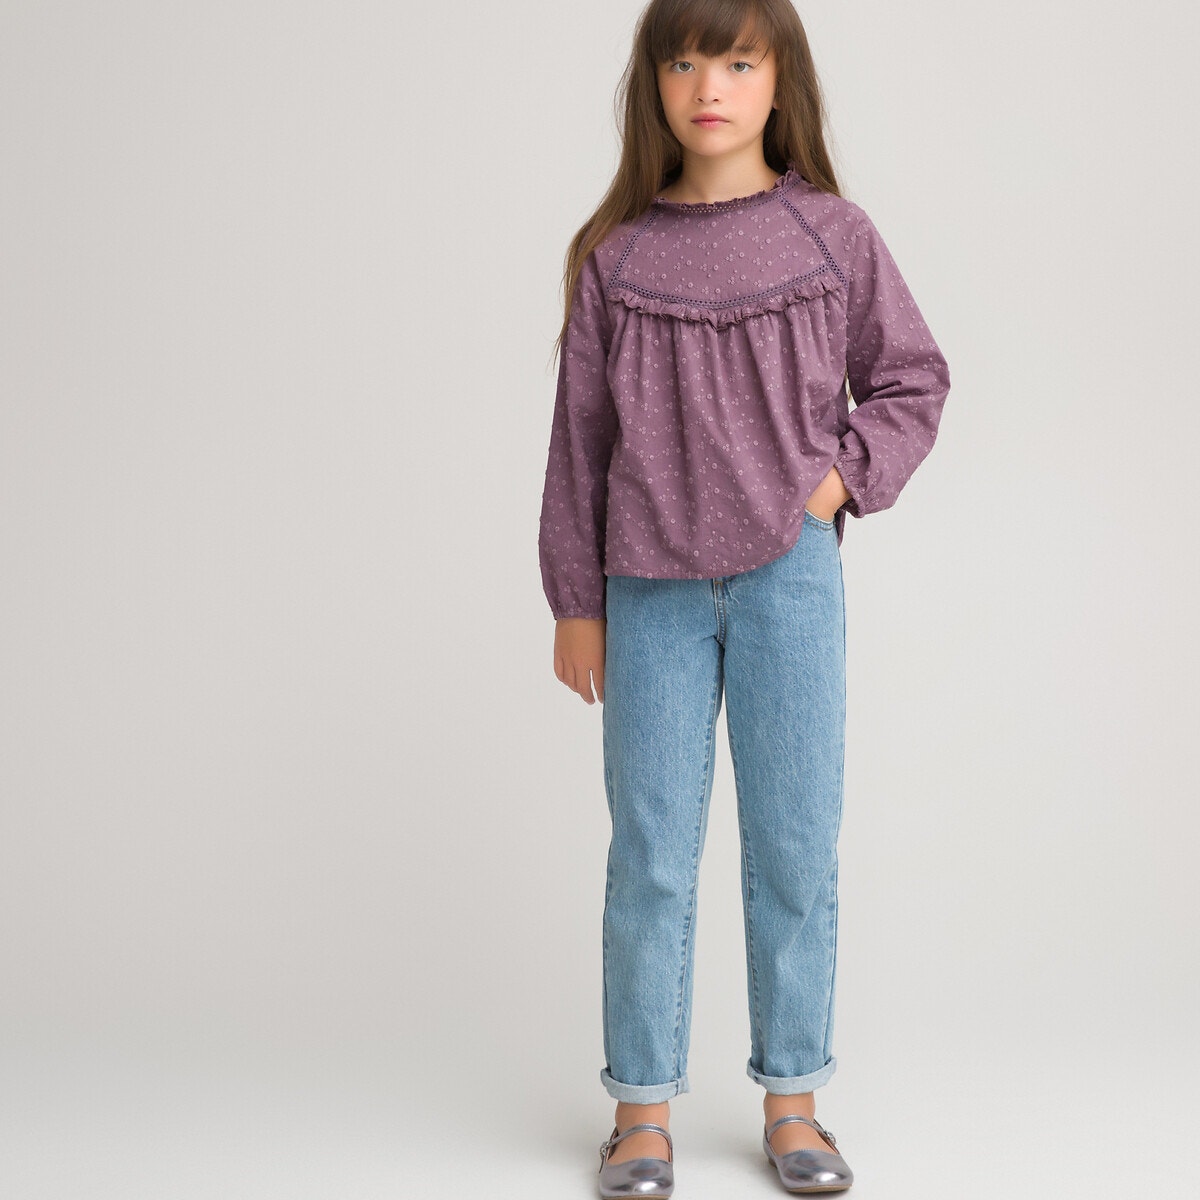 ΠΑΙΔΙ | Μπλούζες & Πουκάμισα | Πουκάμισα Μακρυμάνικη μπλούζα με κέντημα, 3-12 ετών